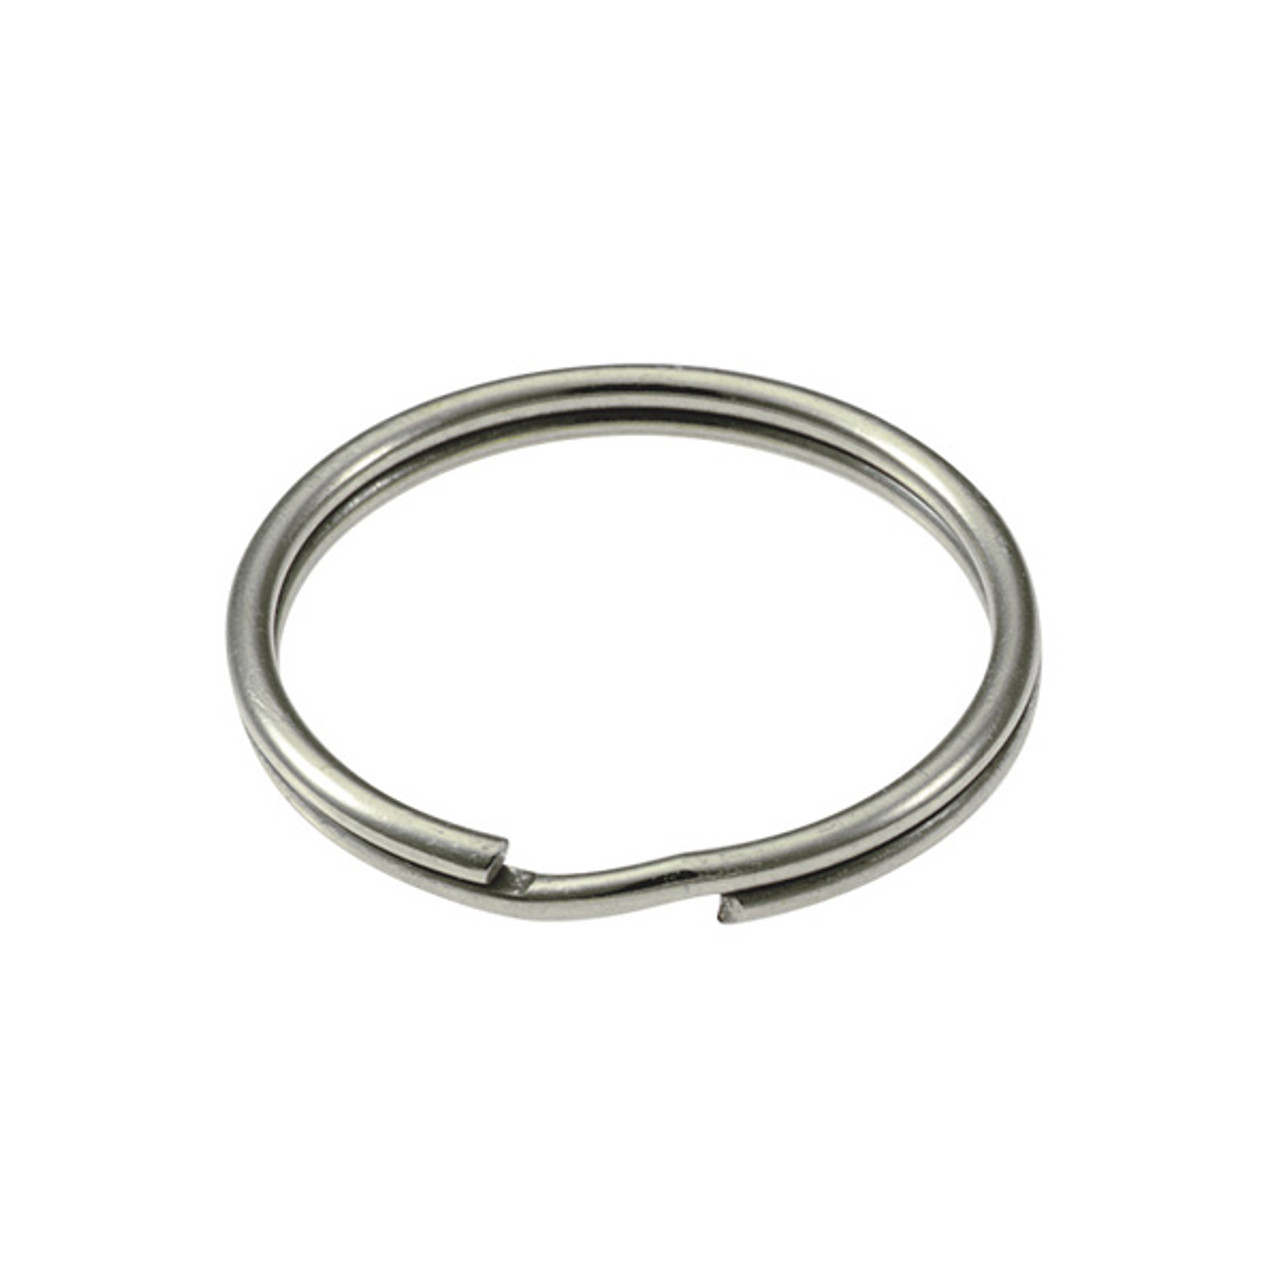 1 Inch Nickel Plated Metal O-Rings, 25 Pack